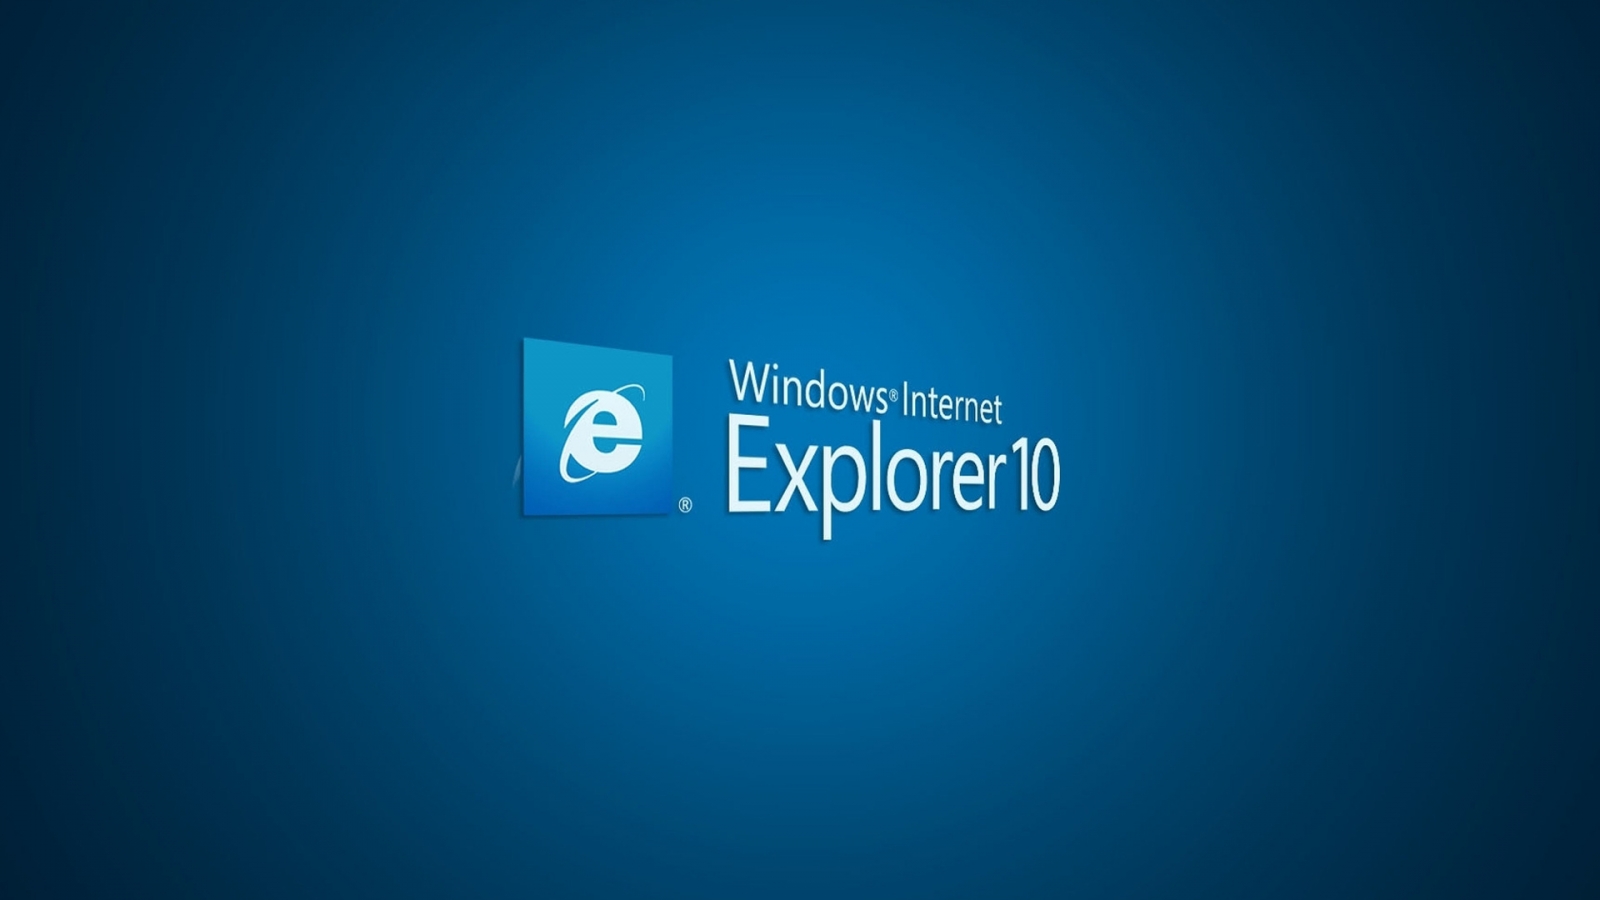 Internet Explorer 10 for 1600 x 900 HDTV resolution